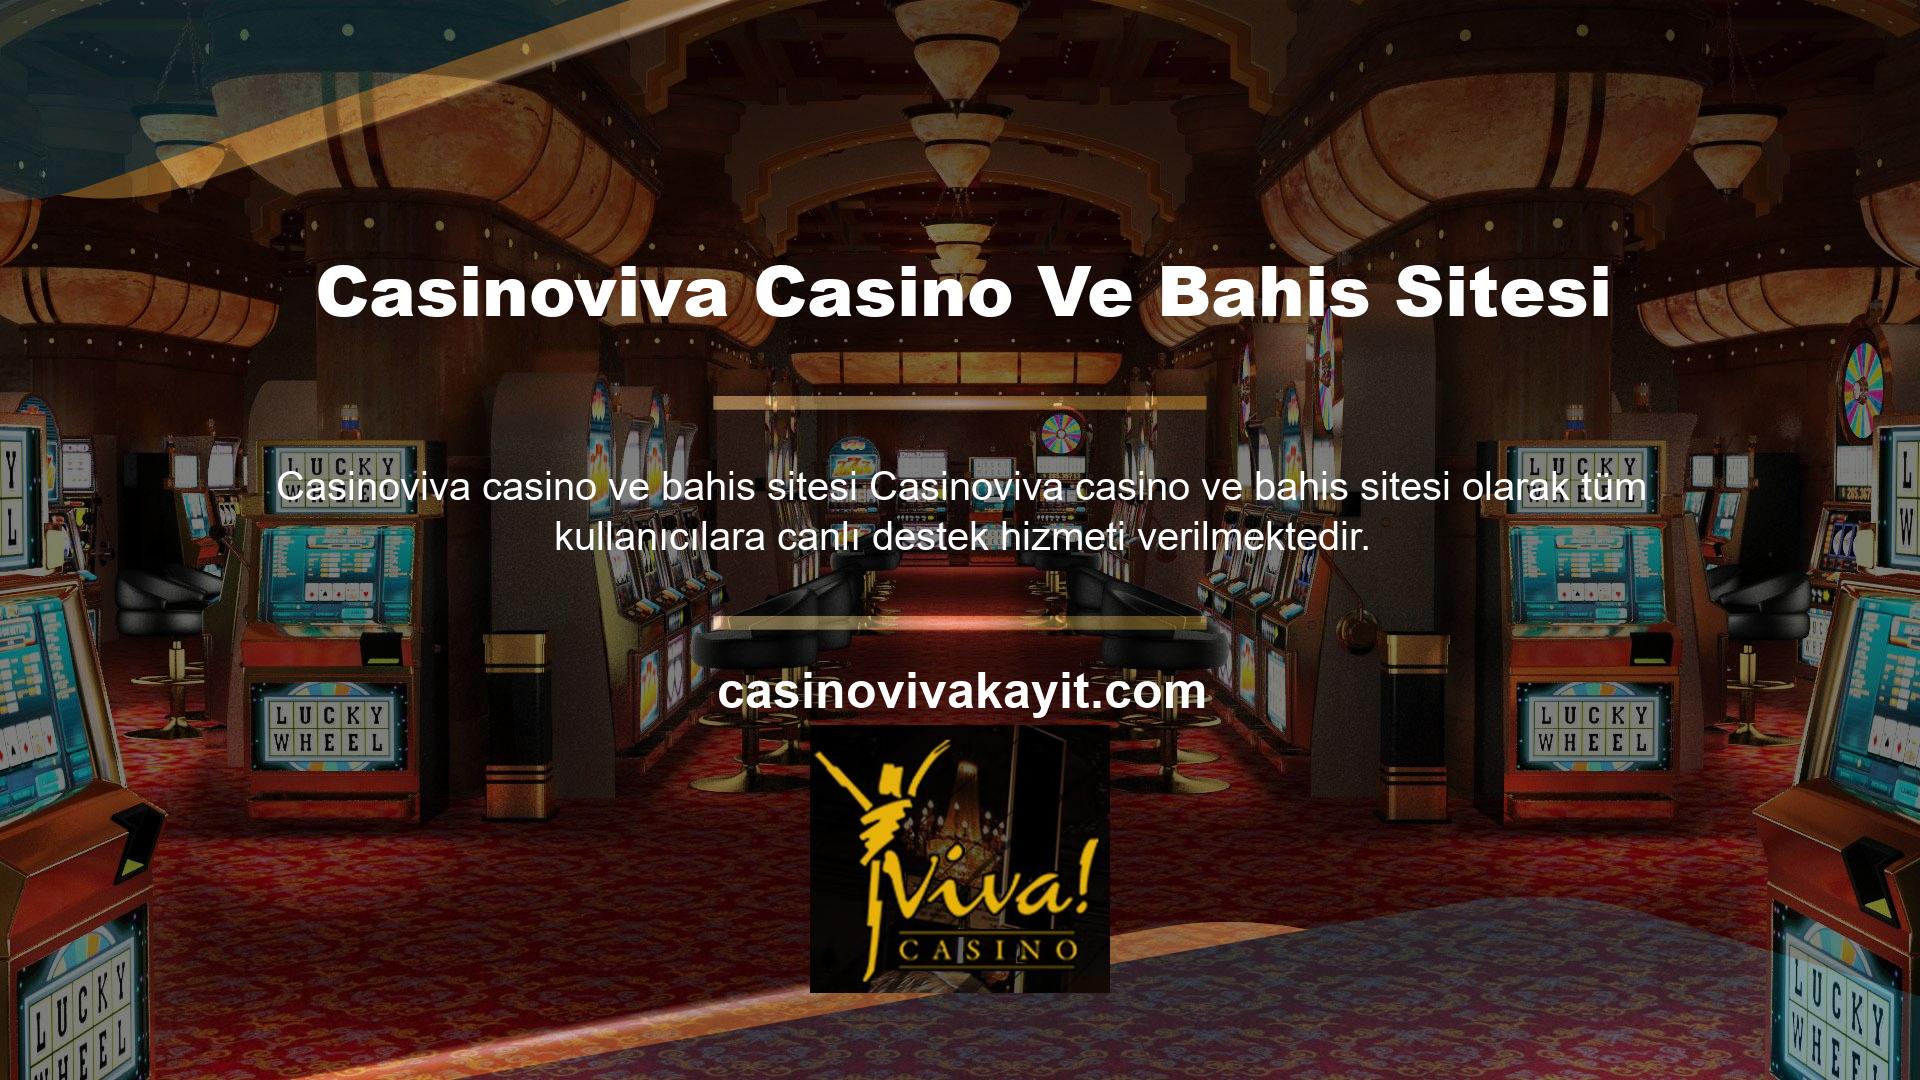 Sosyal medya hesaplarını aktif olarak kullanan casino sitesi Casinoviva birçok temayı paylaşmaktadır